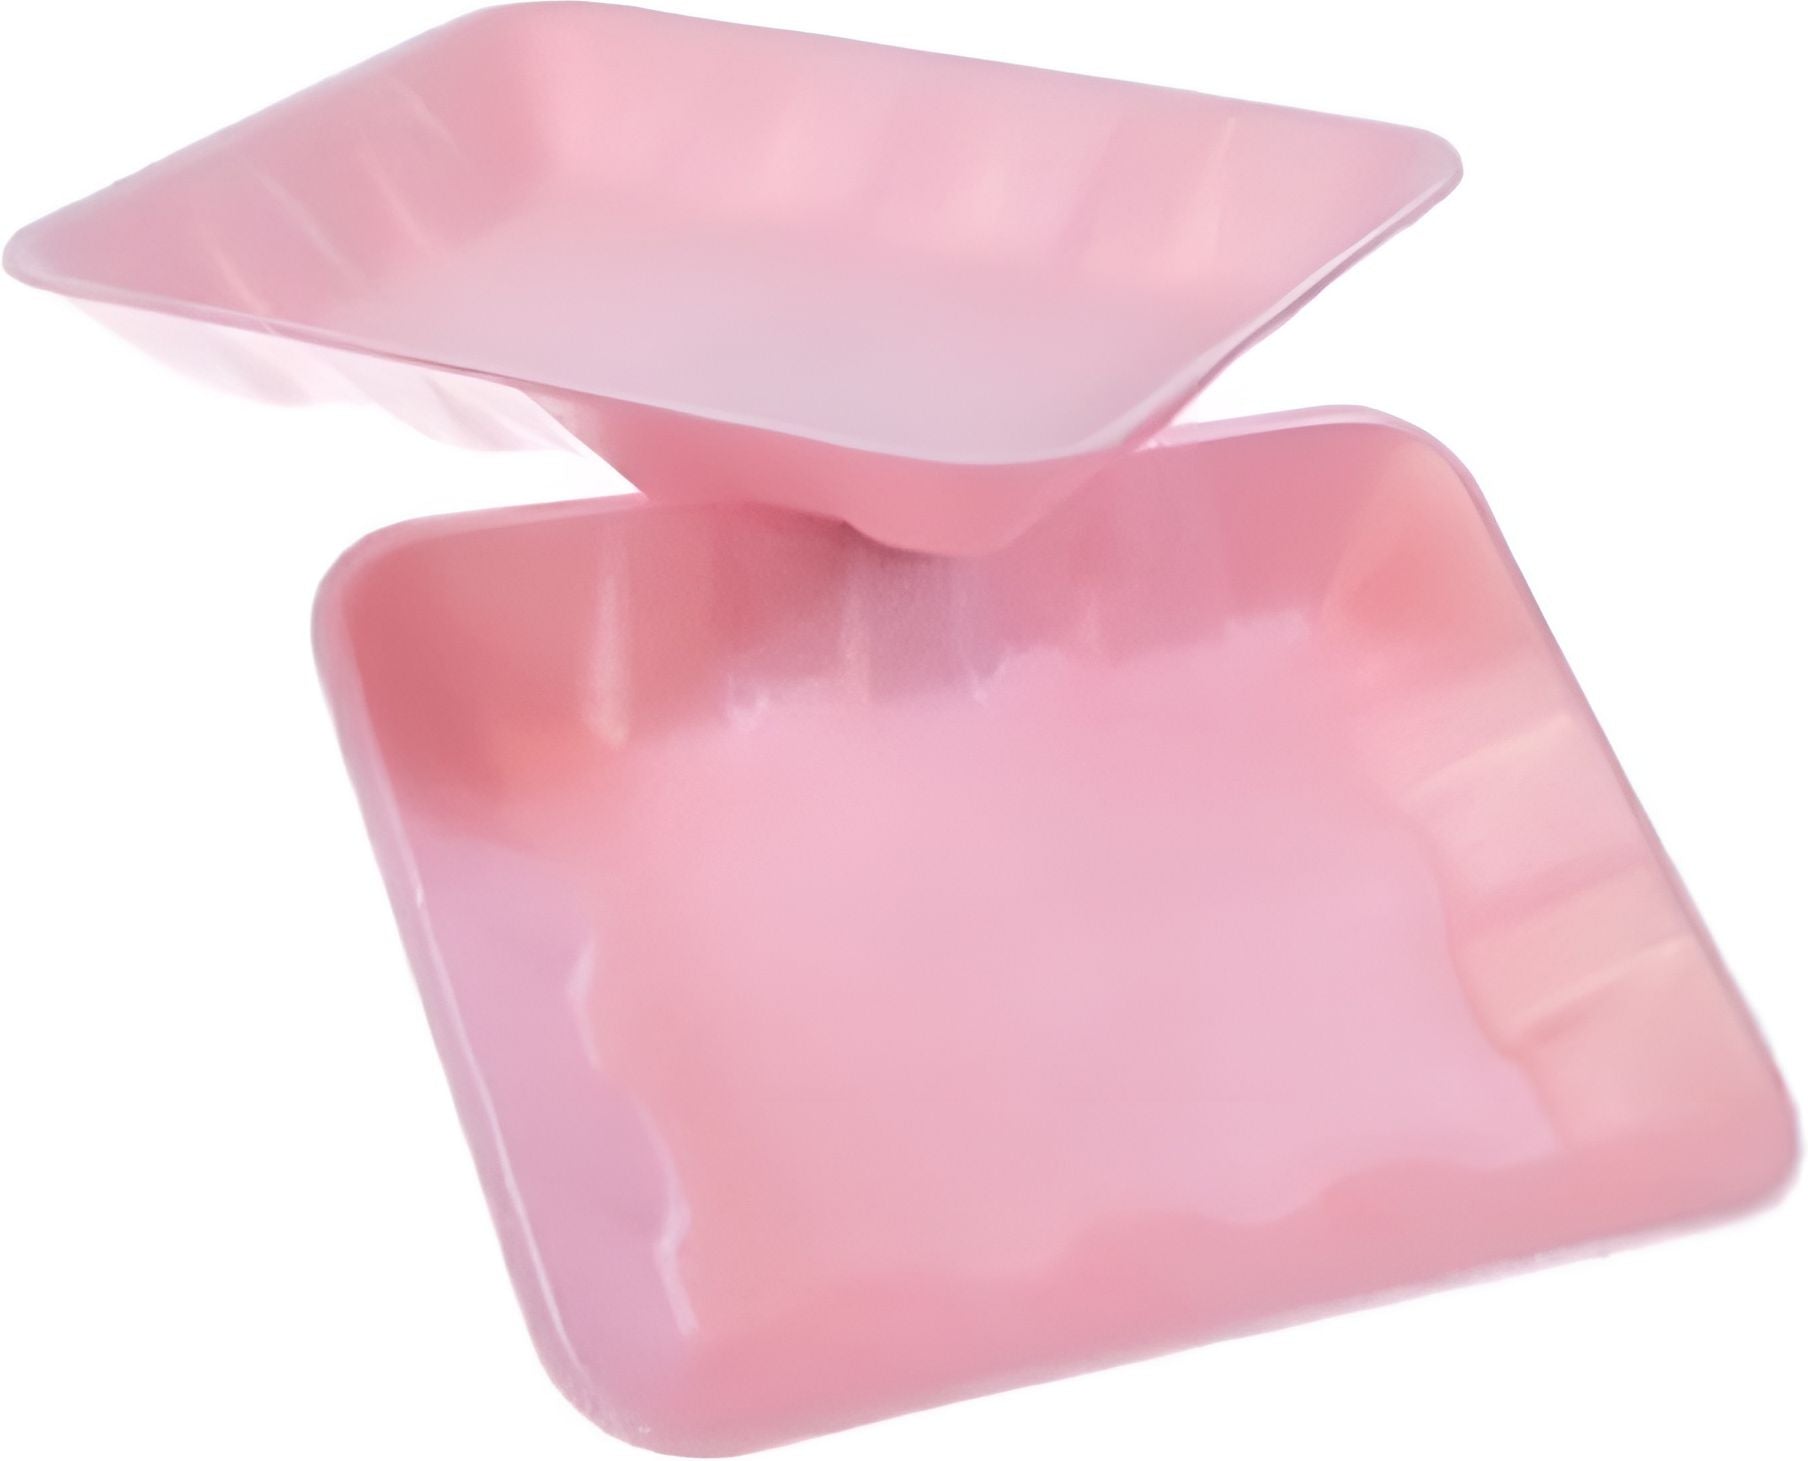 Dyne-A-Pak Inc. - 9.125" x 7.125" x 1.25" 4D Rose Pink Foam Meat Trays, 500 Per Case - 201004DP00